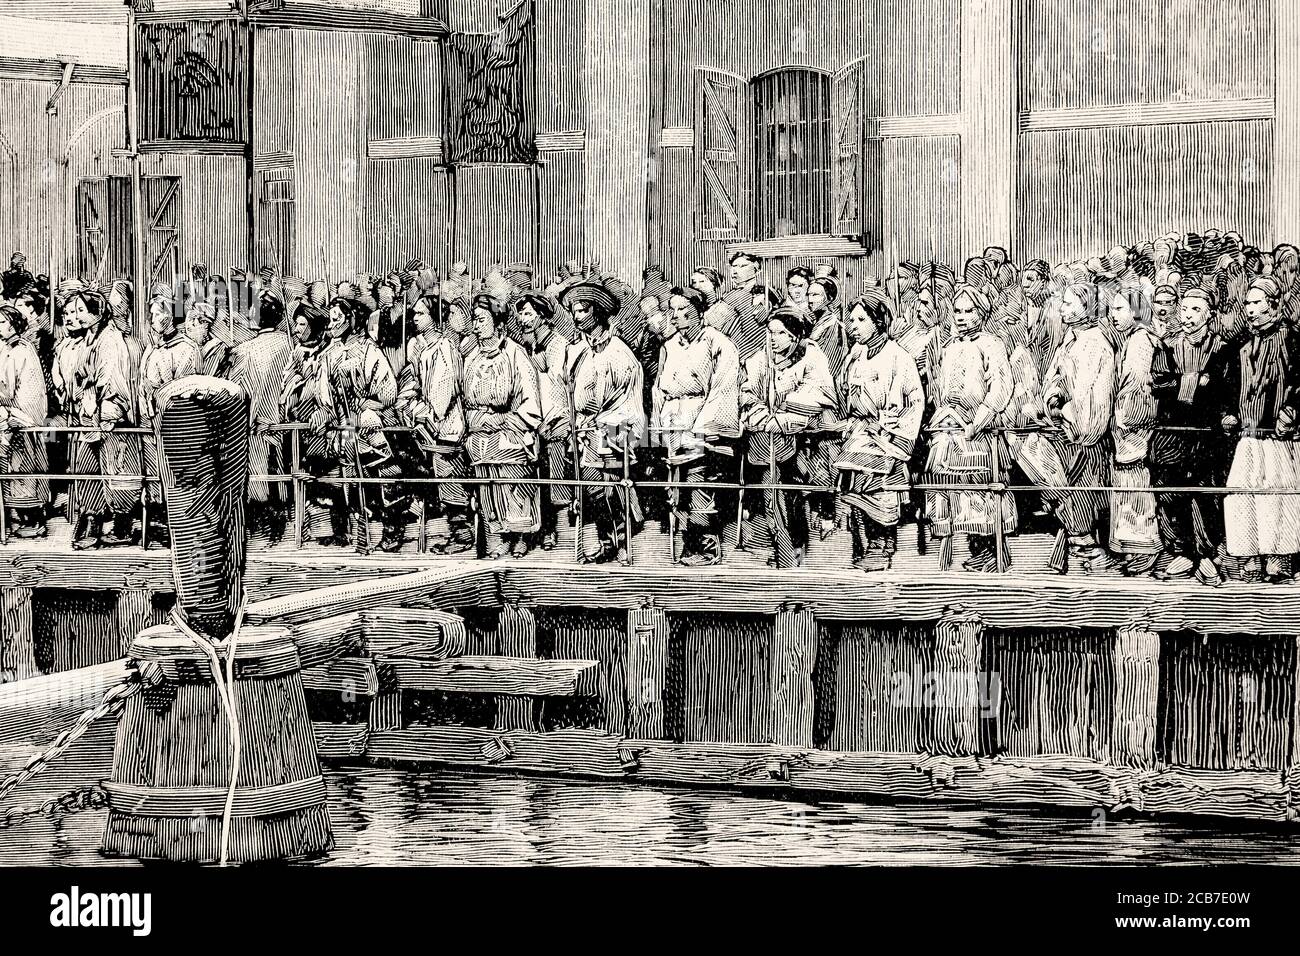 Première guerre sino-japonaise. Embarquement de soldats de l'armée chinoise dans le port de Shanghai, en Chine. Illustration gravée de la Ilustracion Española y Americana datant du XIXe siècle 1894 Banque D'Images